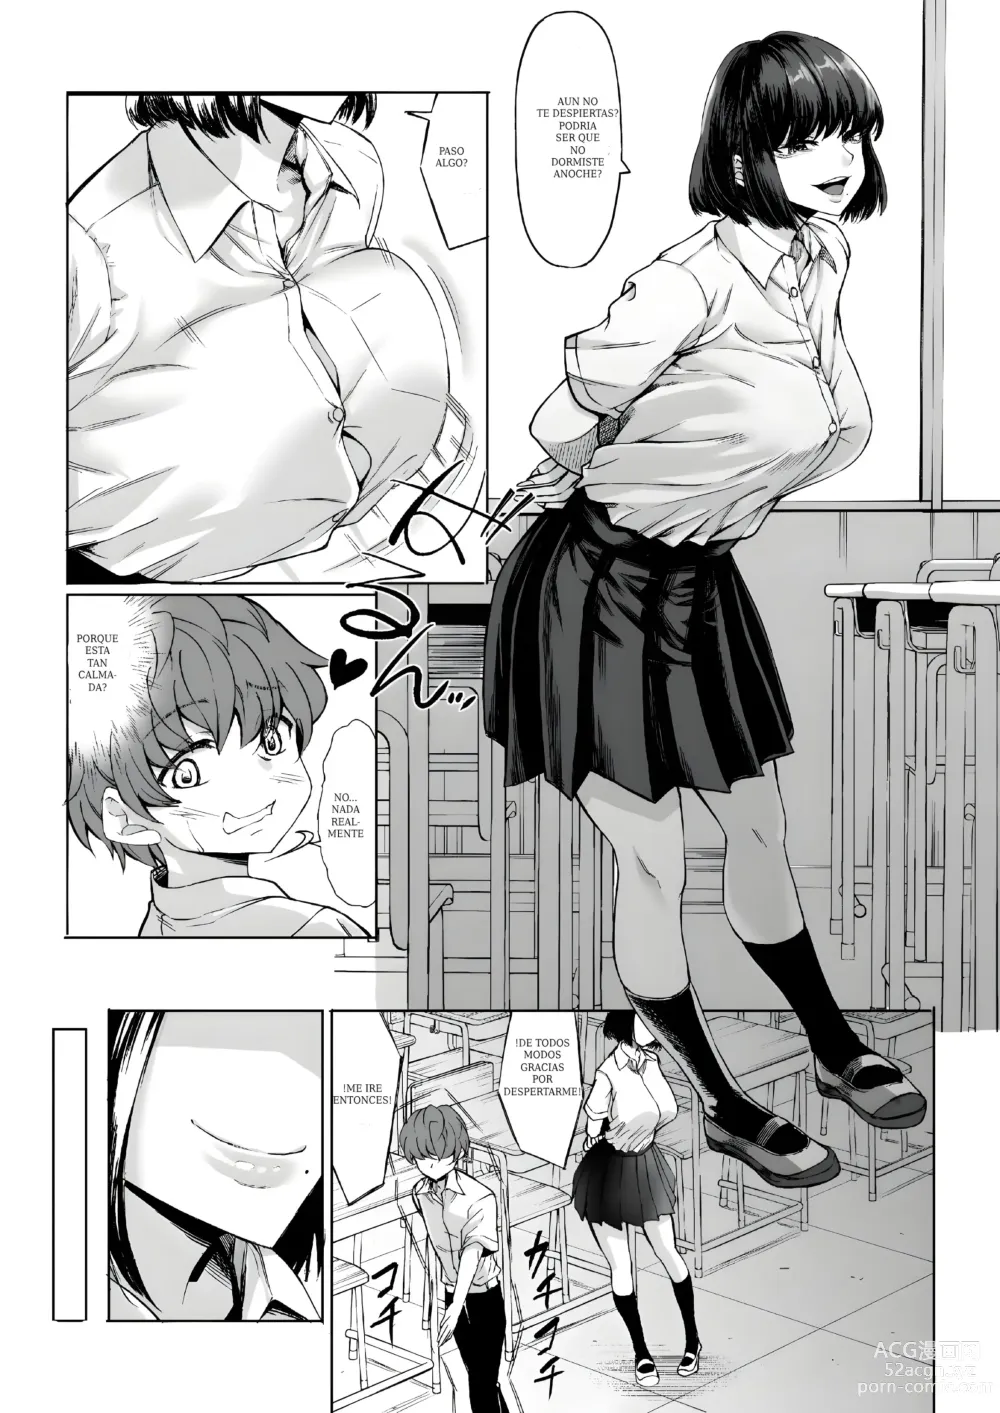 Page 11 of doujinshi Mi virginidad fue robada mientras dormia